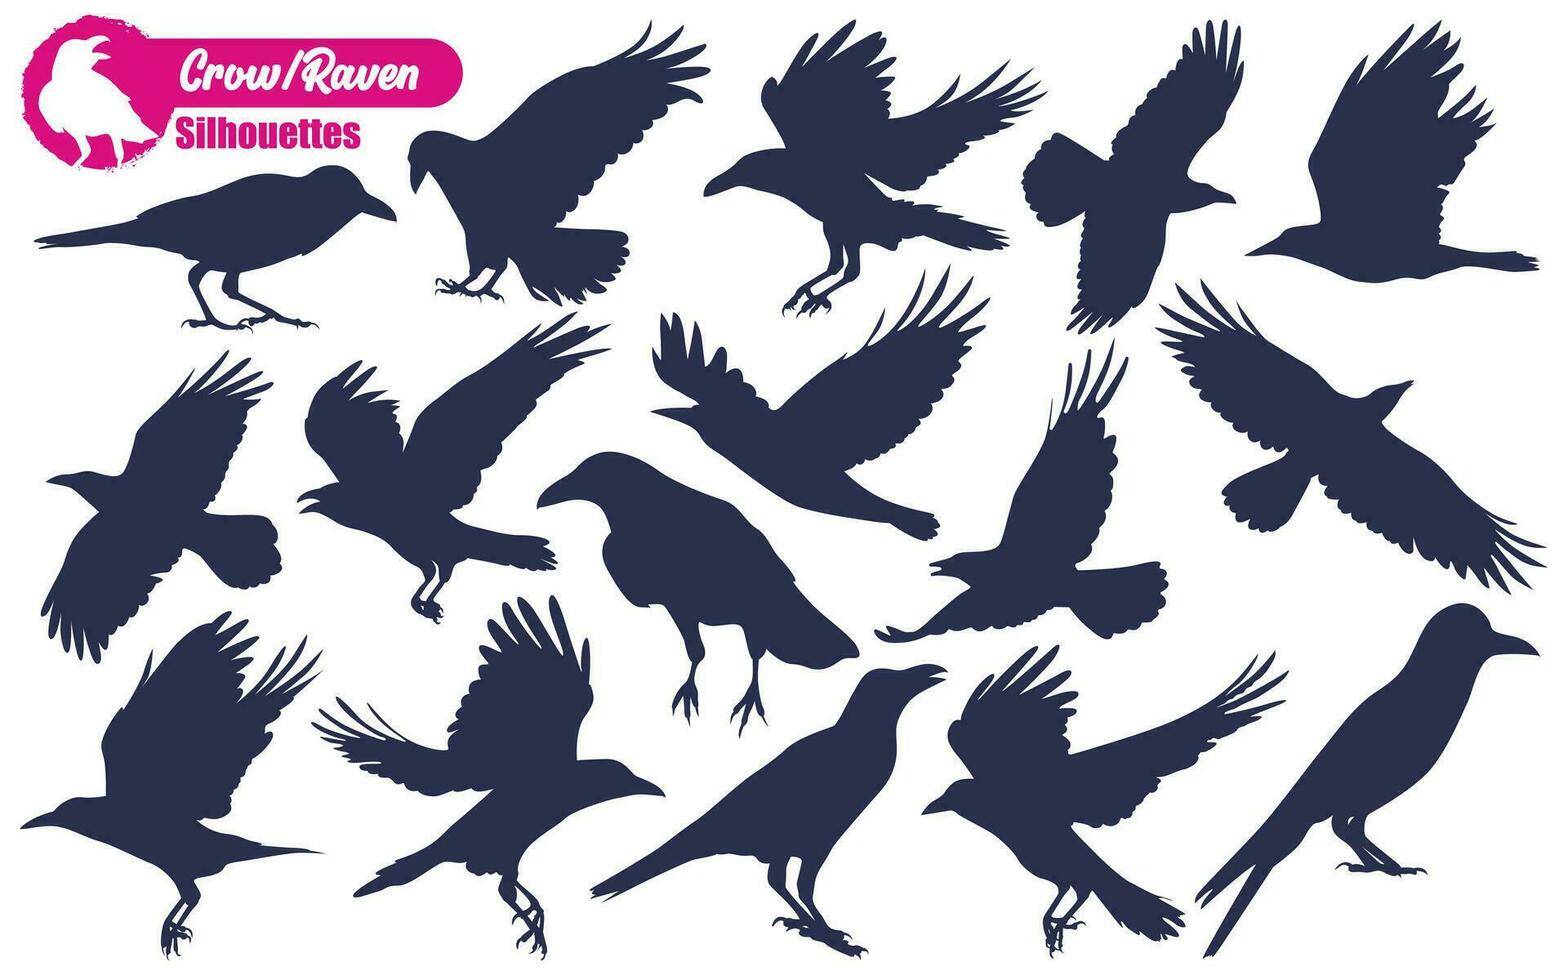 volador cuervo o cuervo siluetas vector